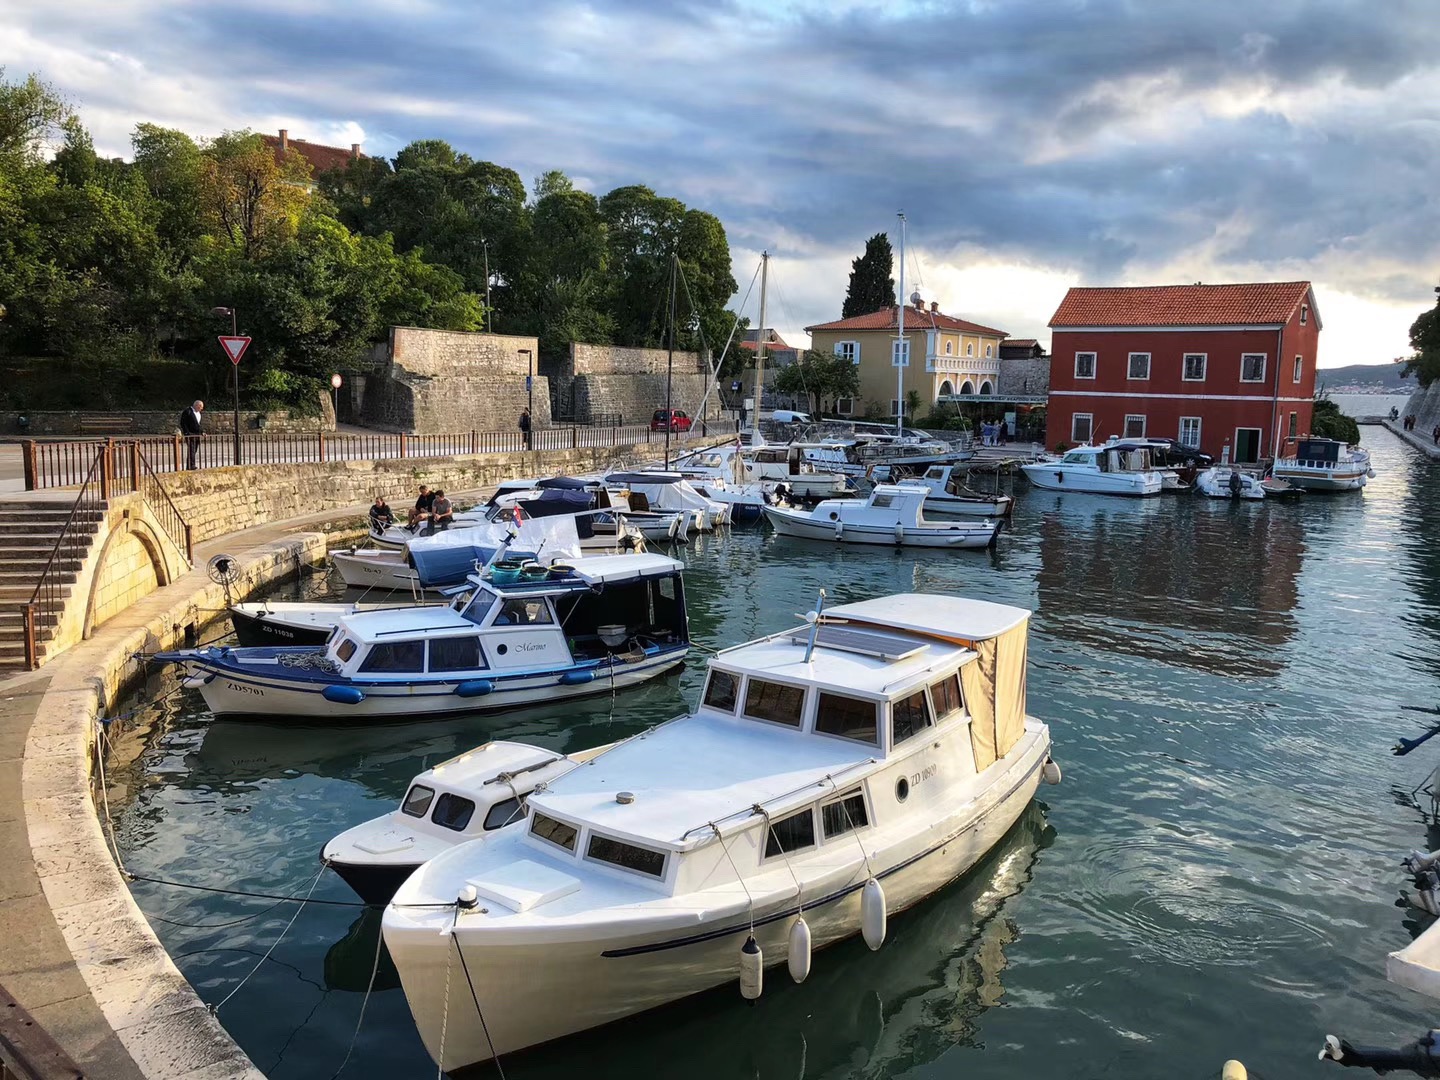 扎达尔- Zadar， 古城坐落在一个半岛上，拥有数百年来保存完好的人类文化遗产。图三是扎达尔城门，